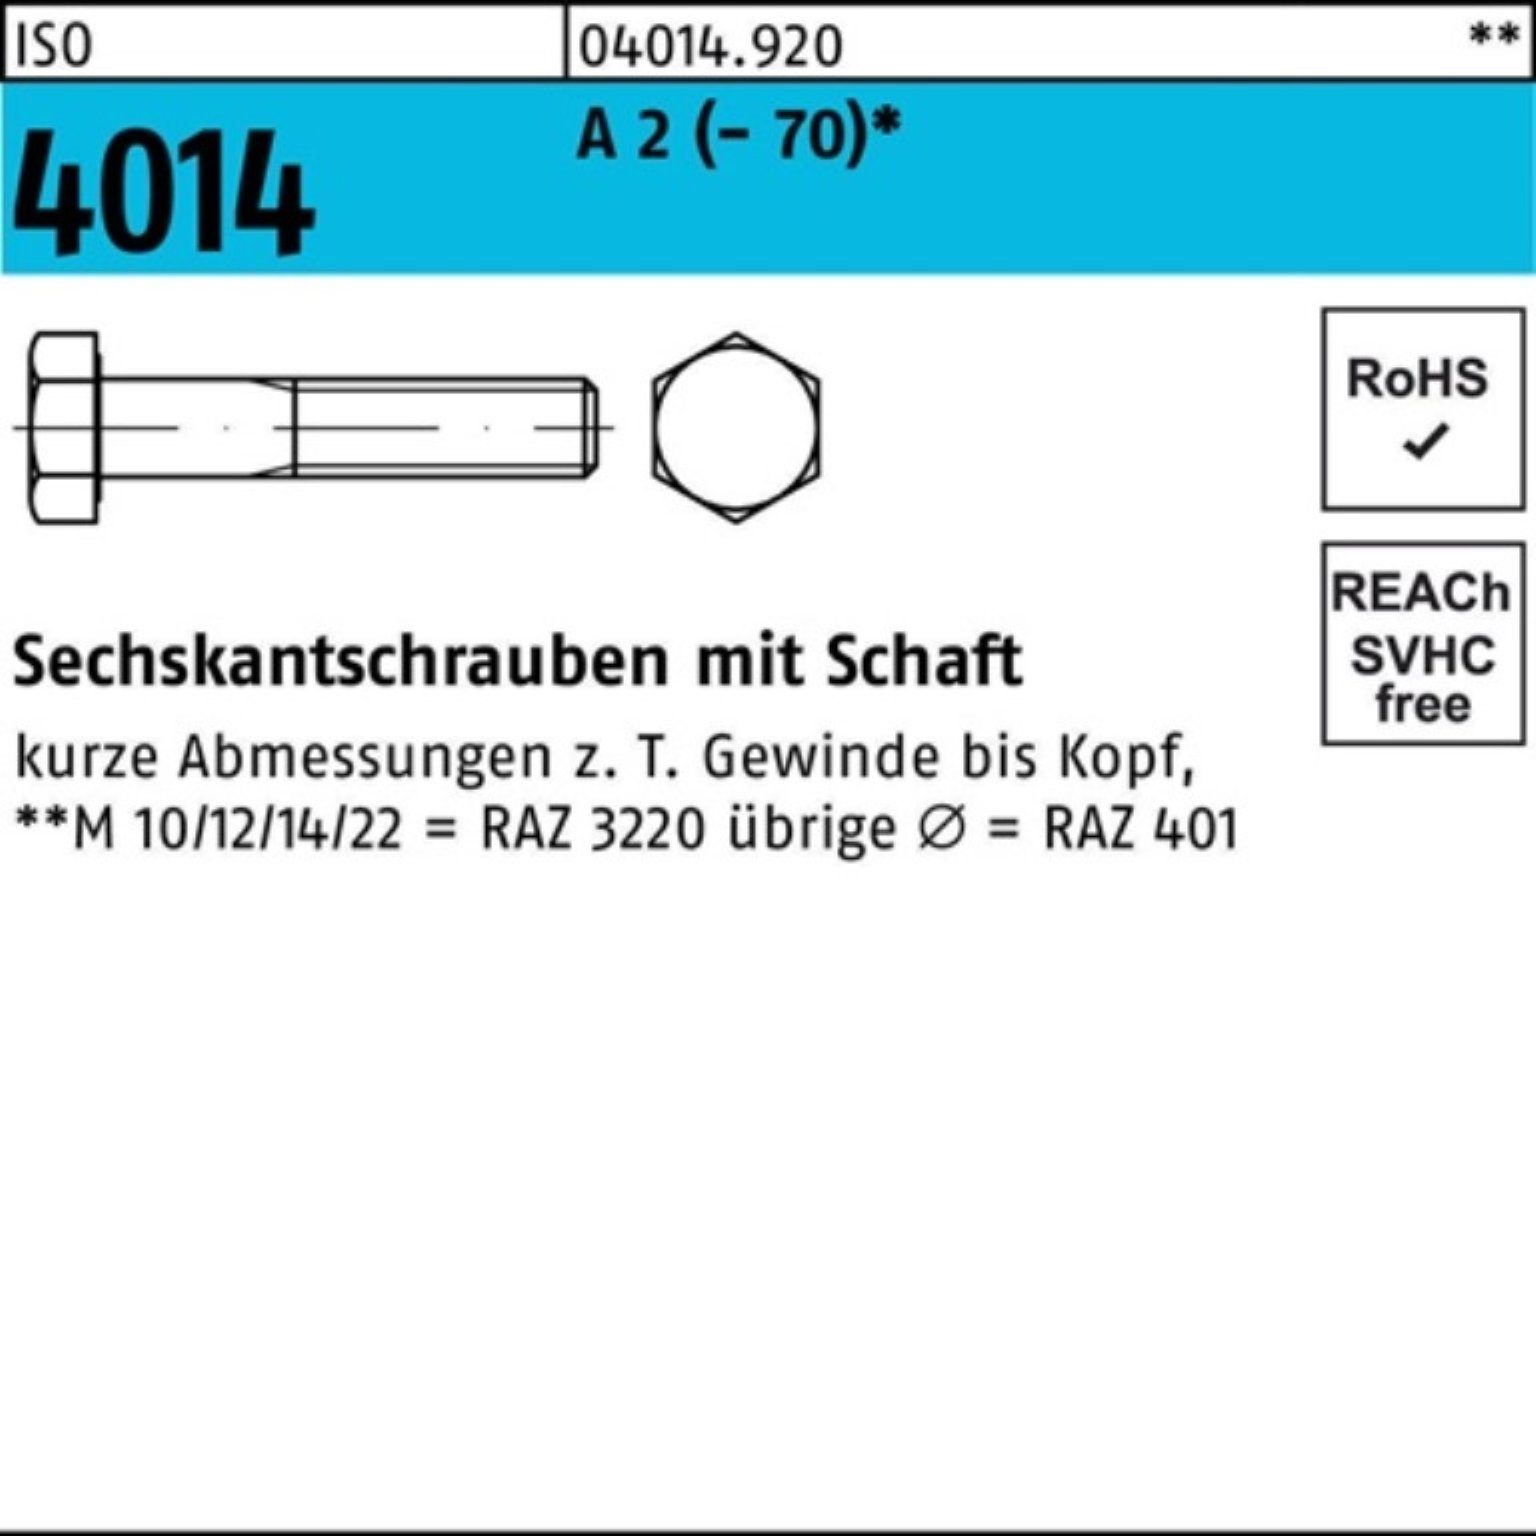 (70) Sechskantschraube 100er St Pack Schaft 4014 Sechskantschraube M22x ISO Bufab 140 1 A 2